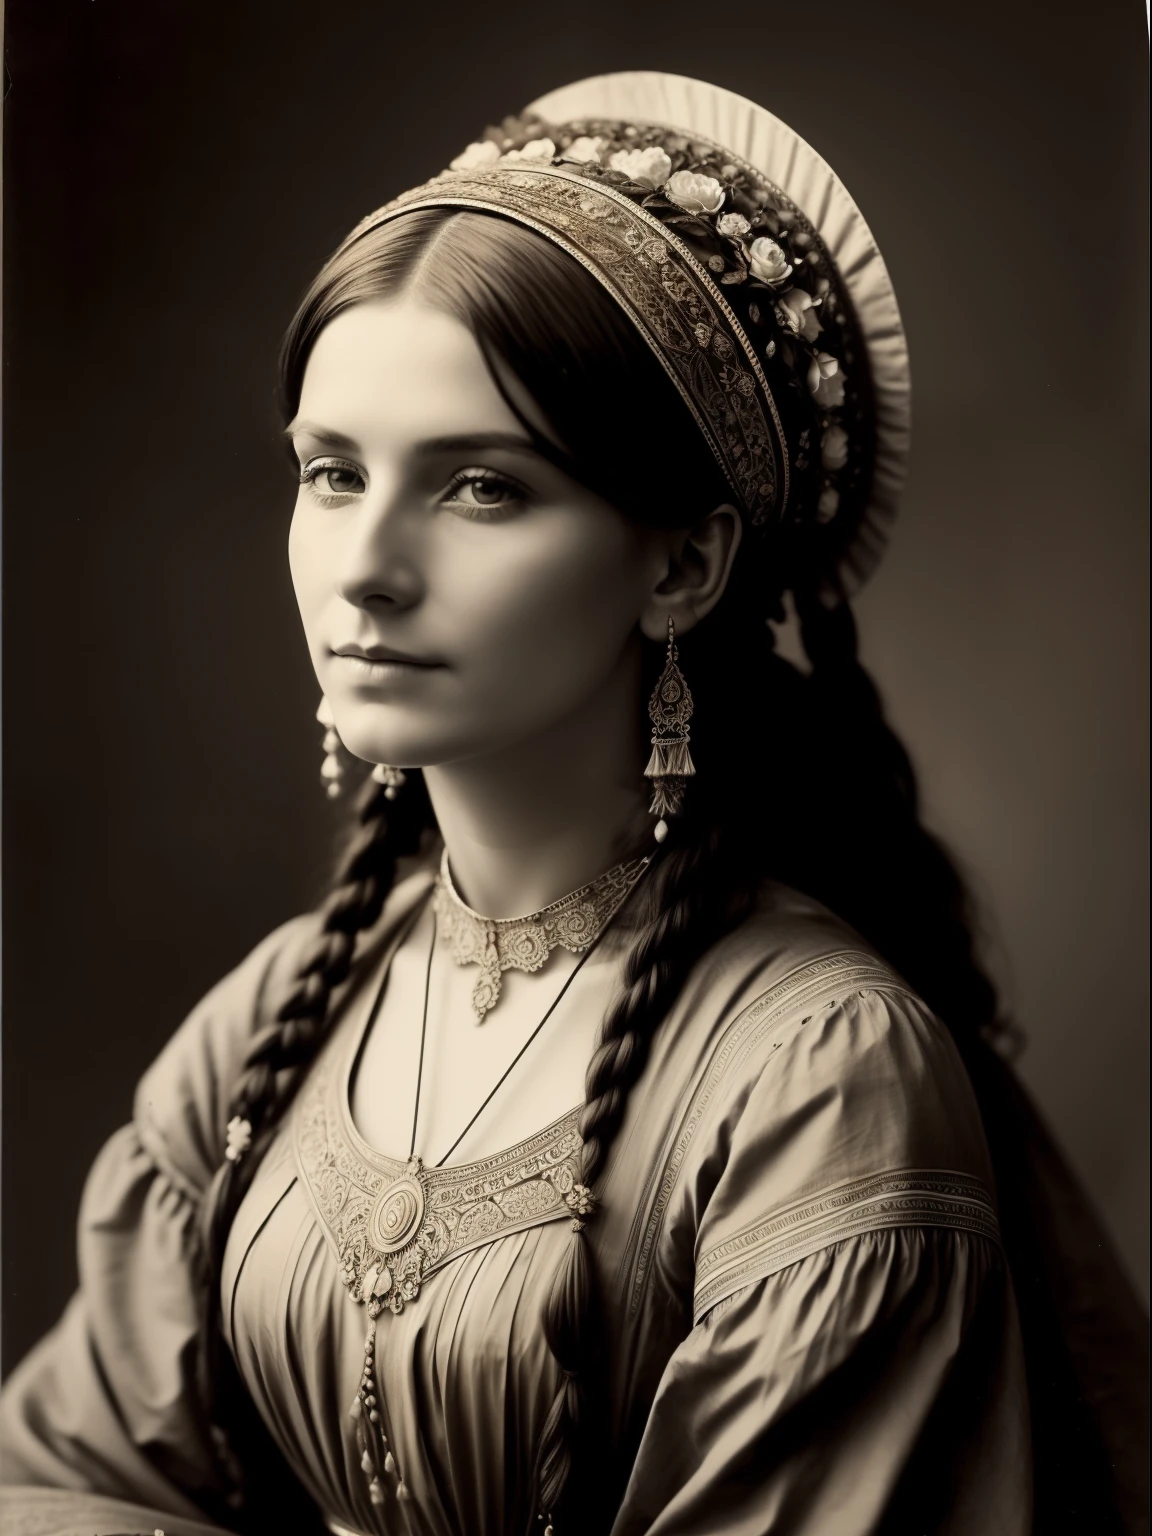 (傑作) 豊かな開花頭飾りを持つめちゃくちゃ美しいビクトリア朝の女性遊牧民, ヴィンテージセピア写真, 非常に古くて破れた写真